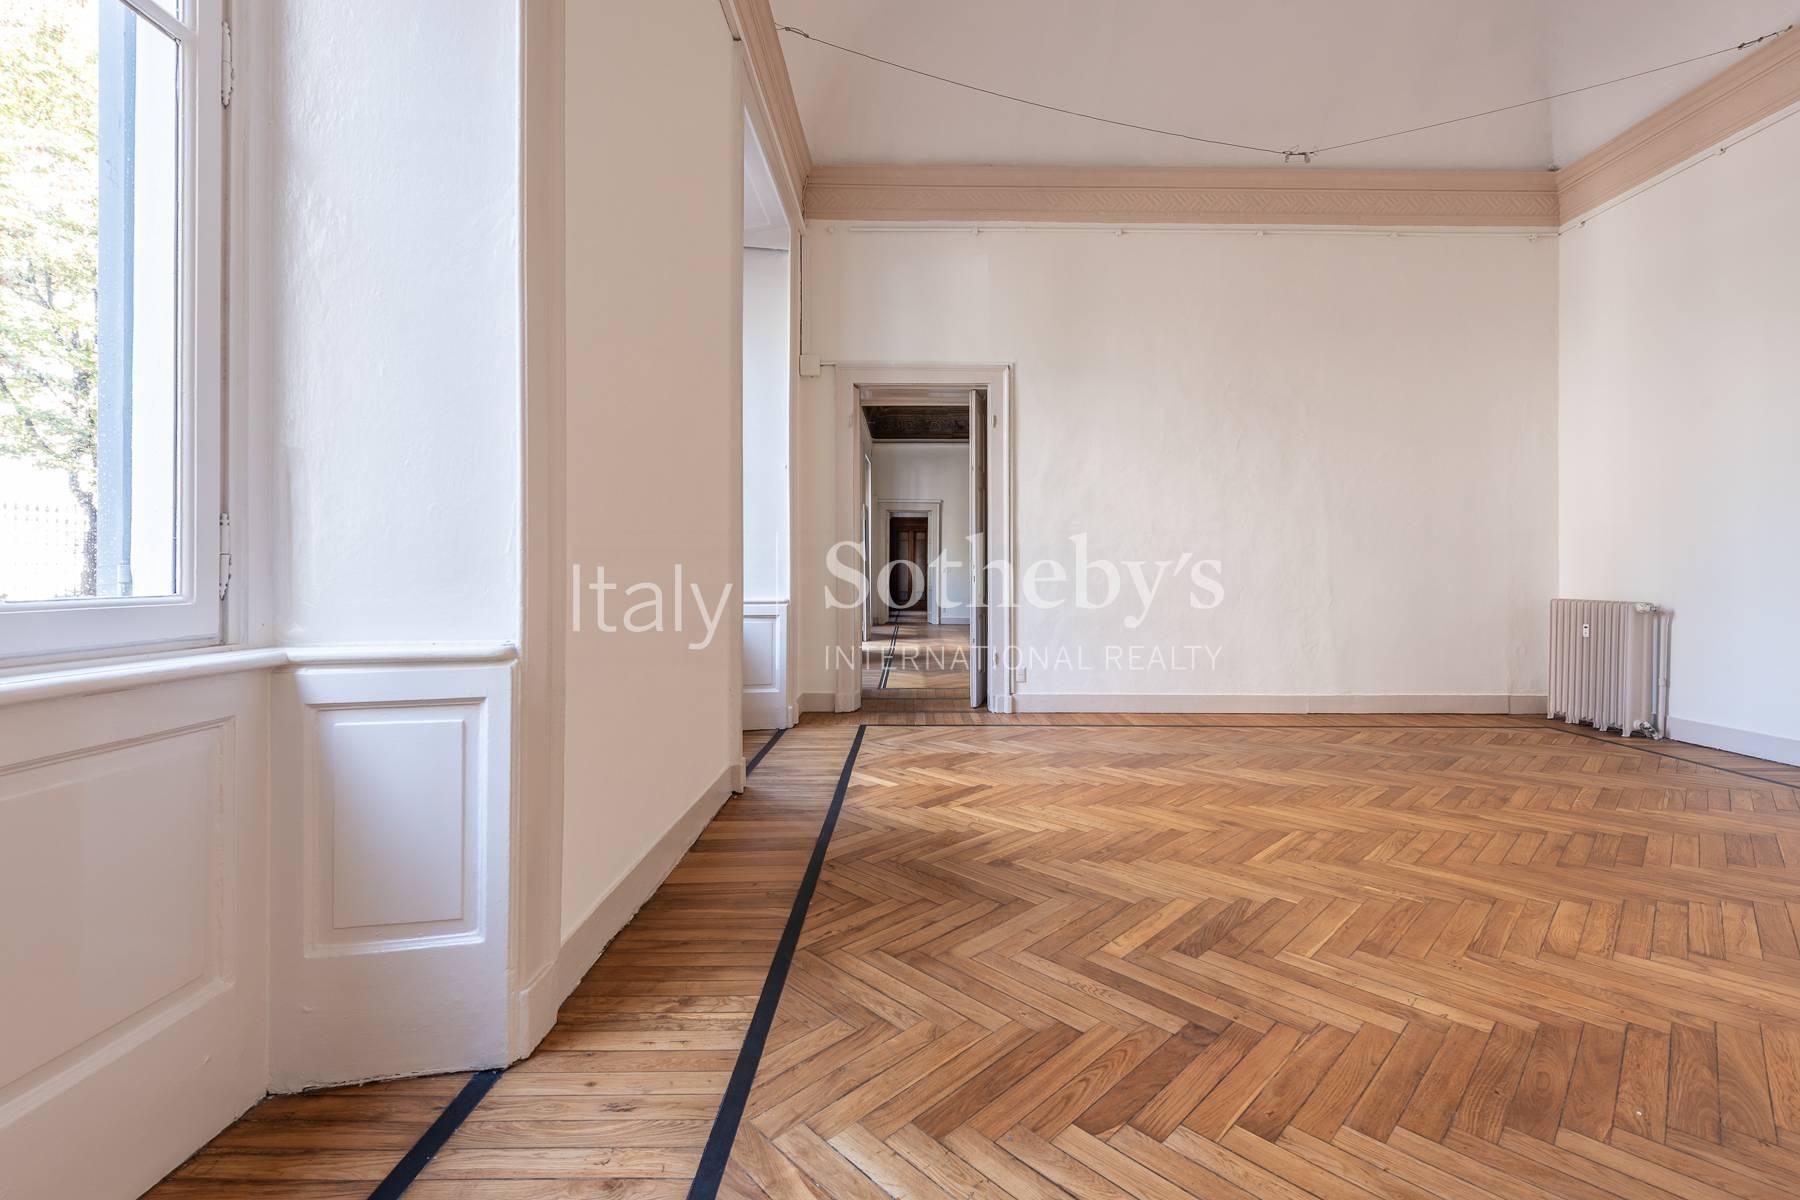 Eine repräsentative Immobilie im Herzen der historischen Altstadt von Mailand - 6